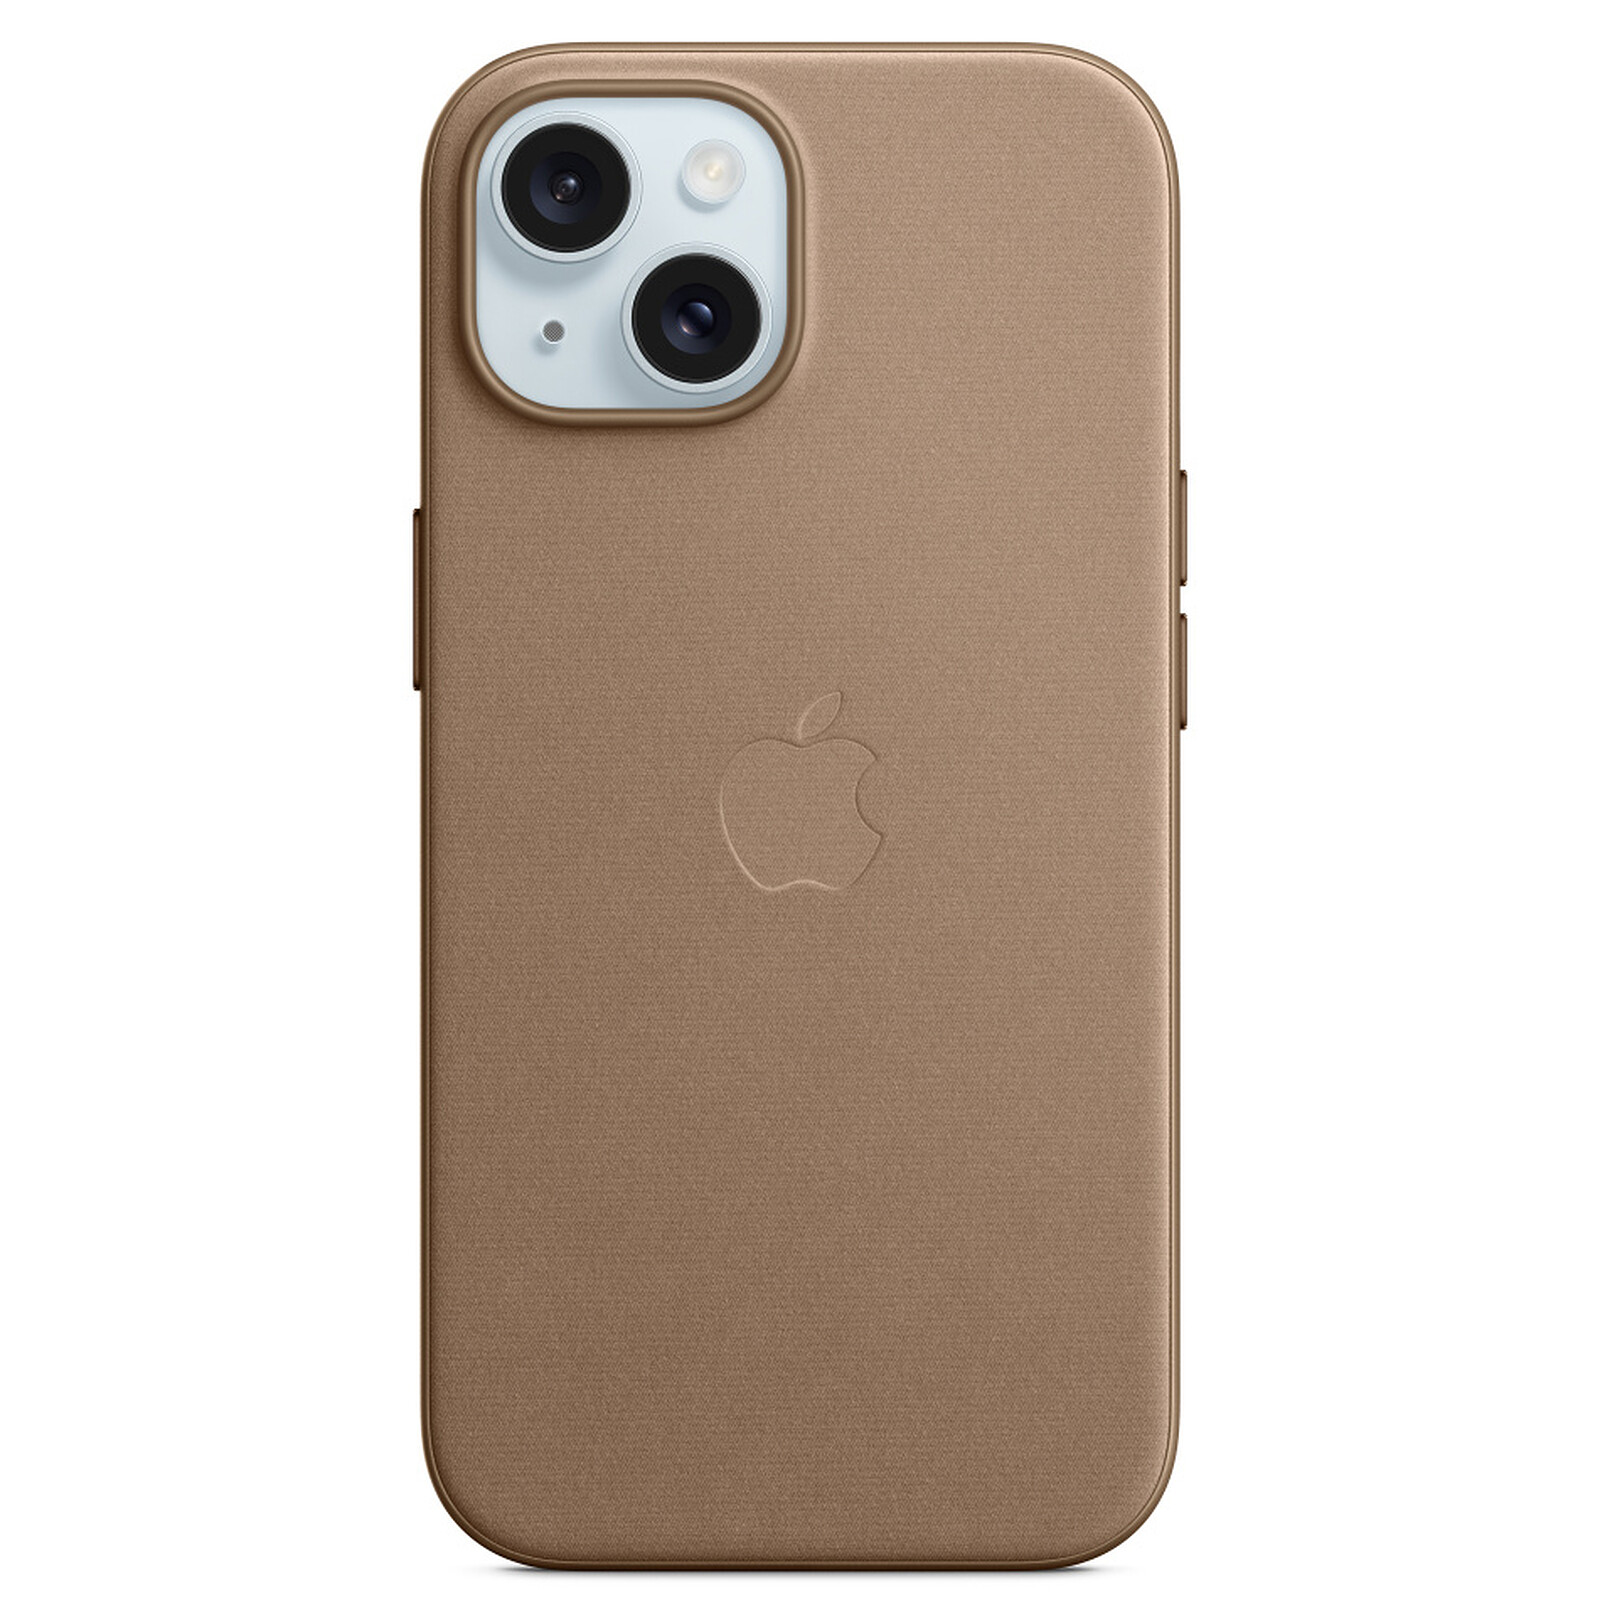 Coque iPhone 13 Couleur Violet Mat avec MagSafe - Protégez votre iPhone  avec style